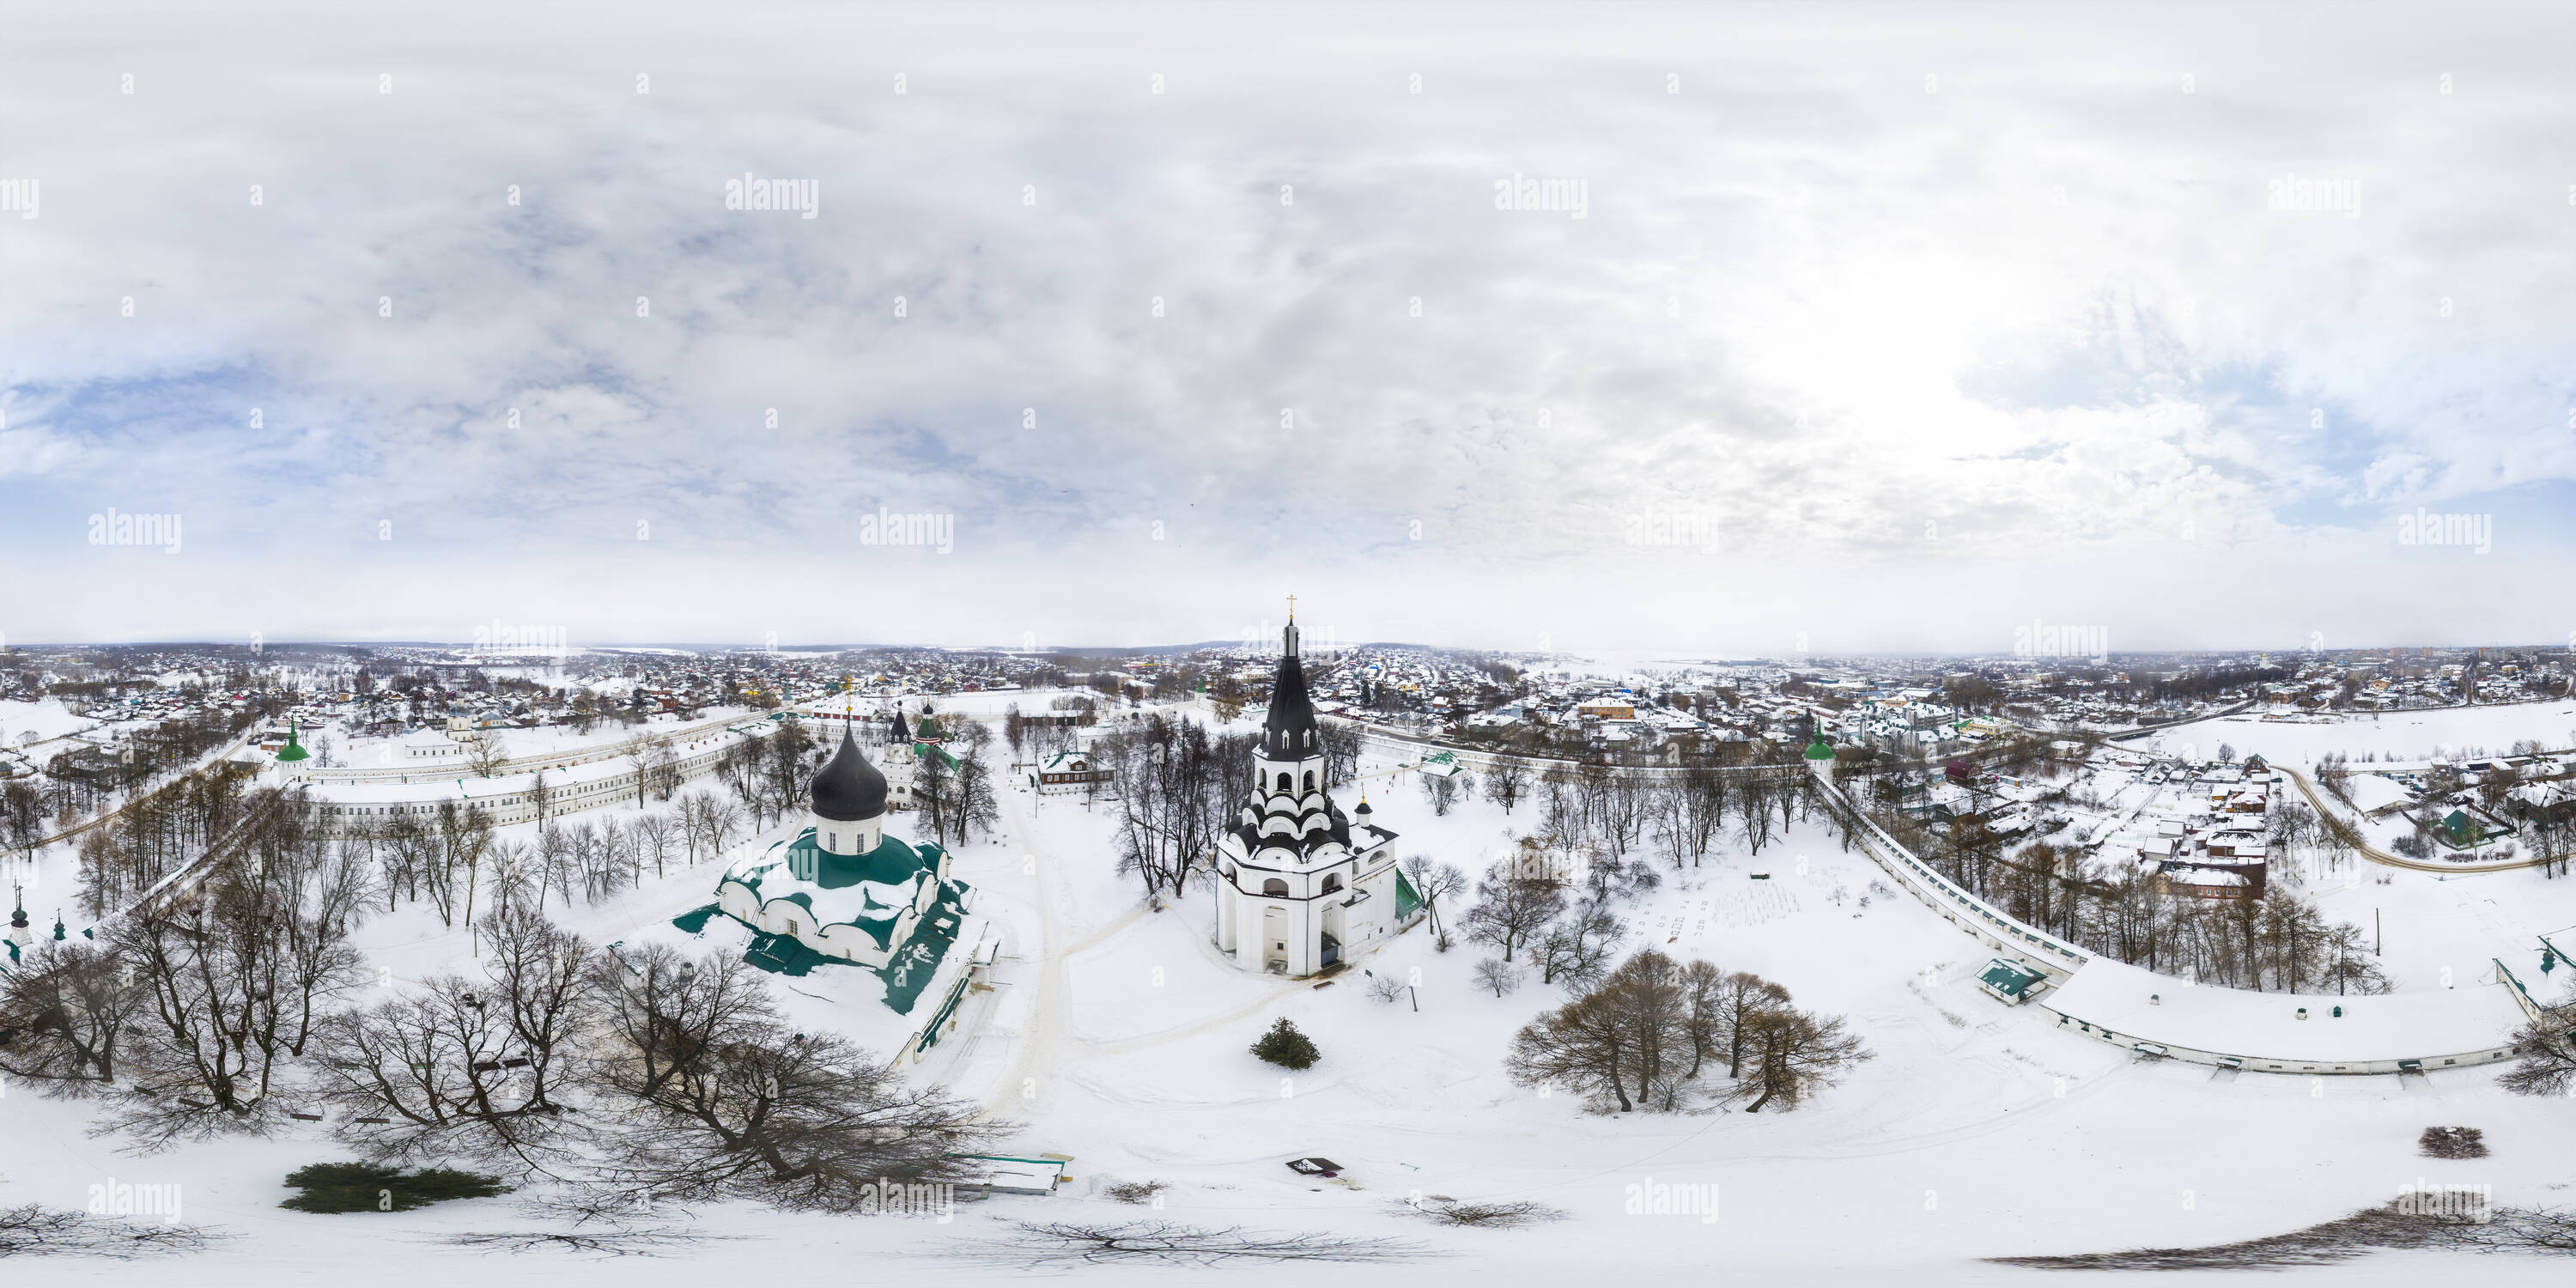 Visualizzazione panoramica a 360 gradi di Cremlino Alexandrov Inverno 2